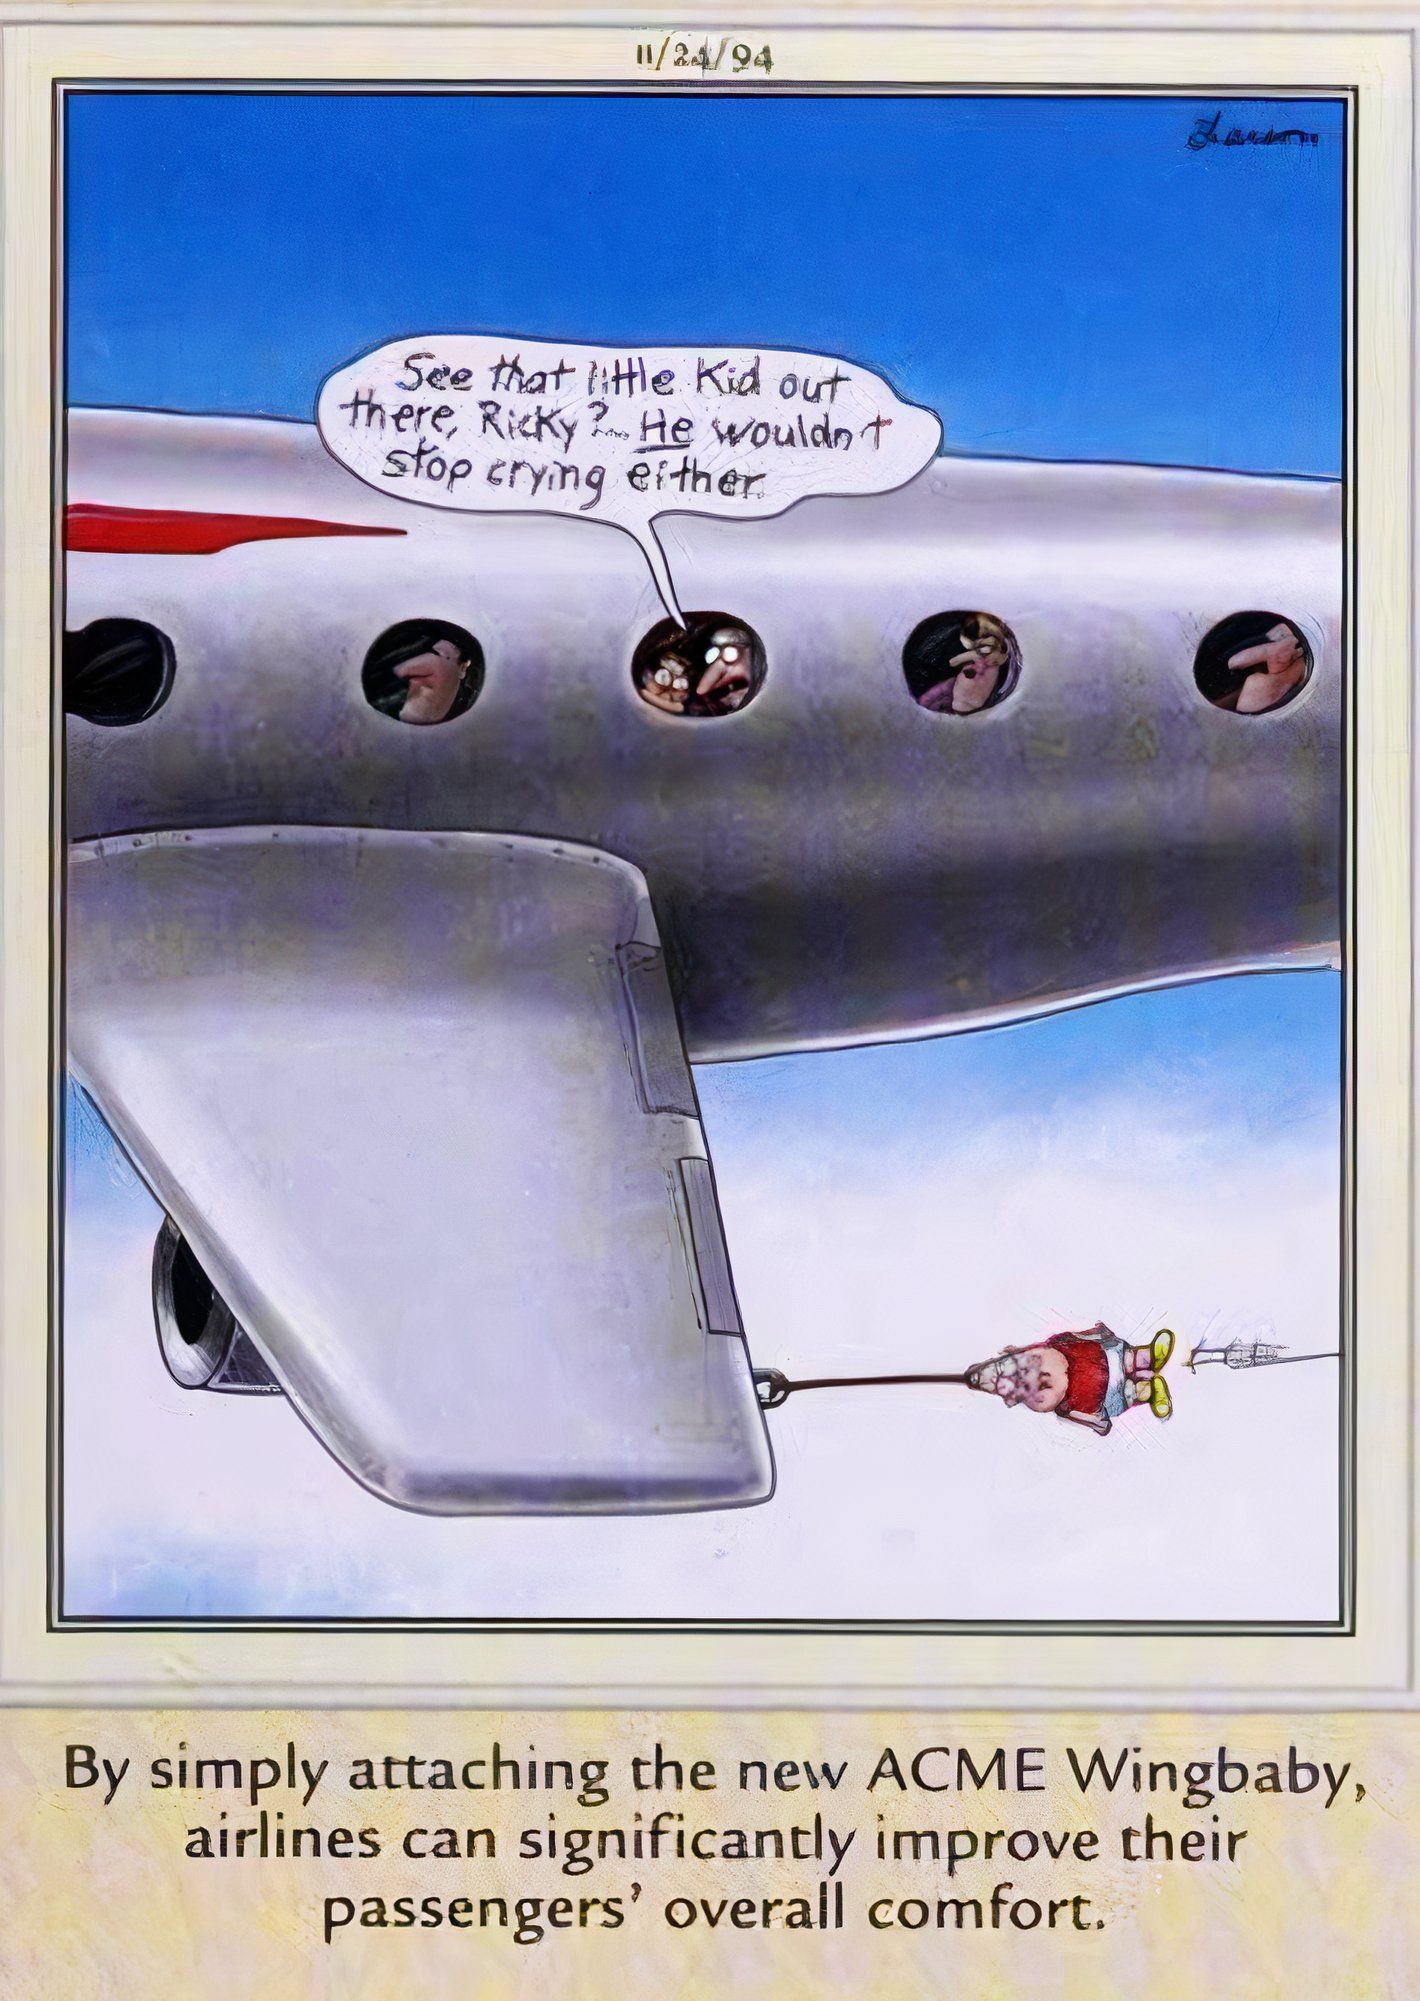 Far Side, 24 de novembro de 1994, passageiros do avião olham pela janela para o 'ACME wingbaby' preso ao avião